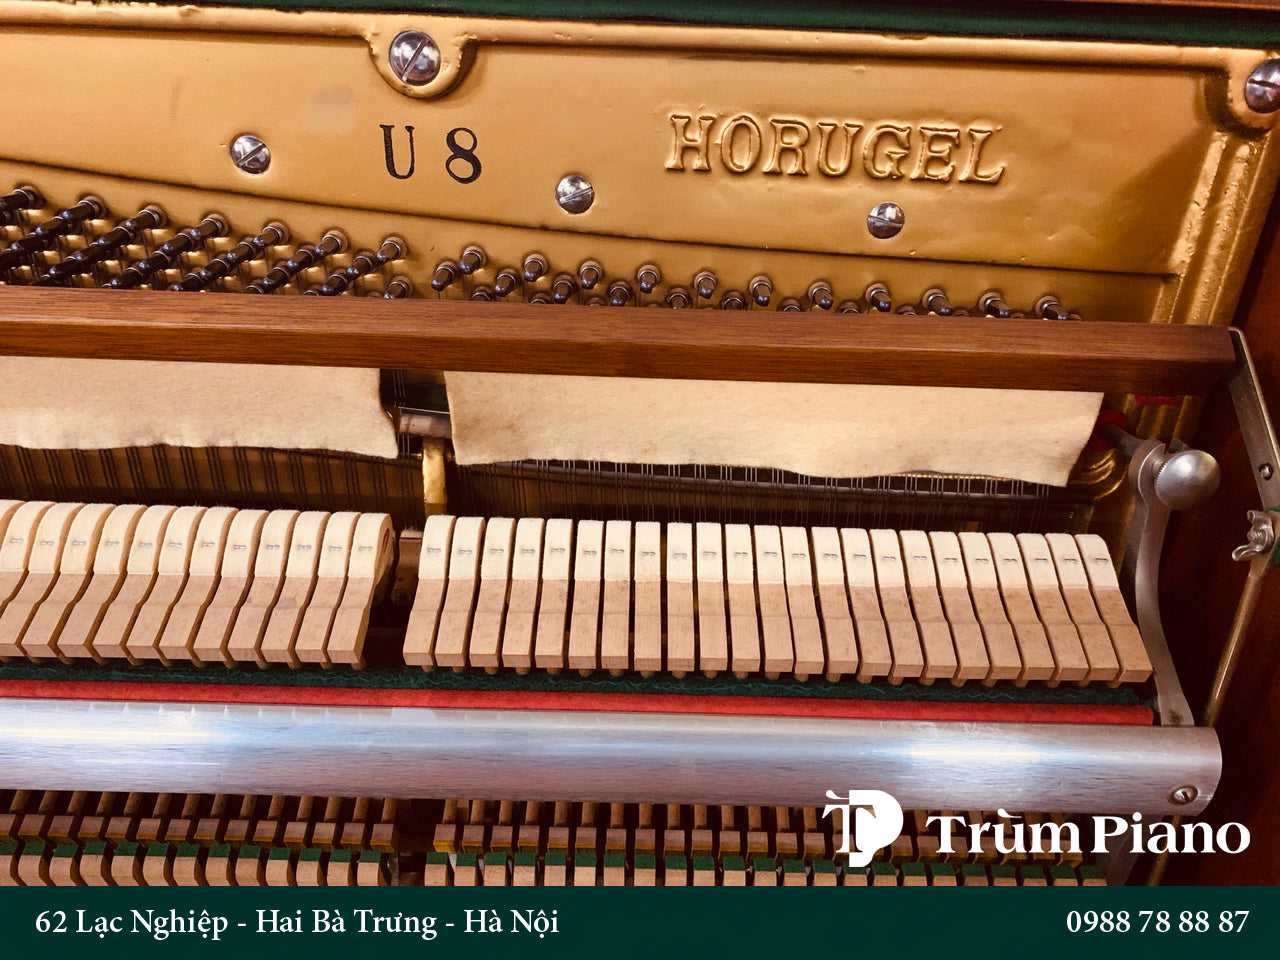 Đàn Piano Horugel U8